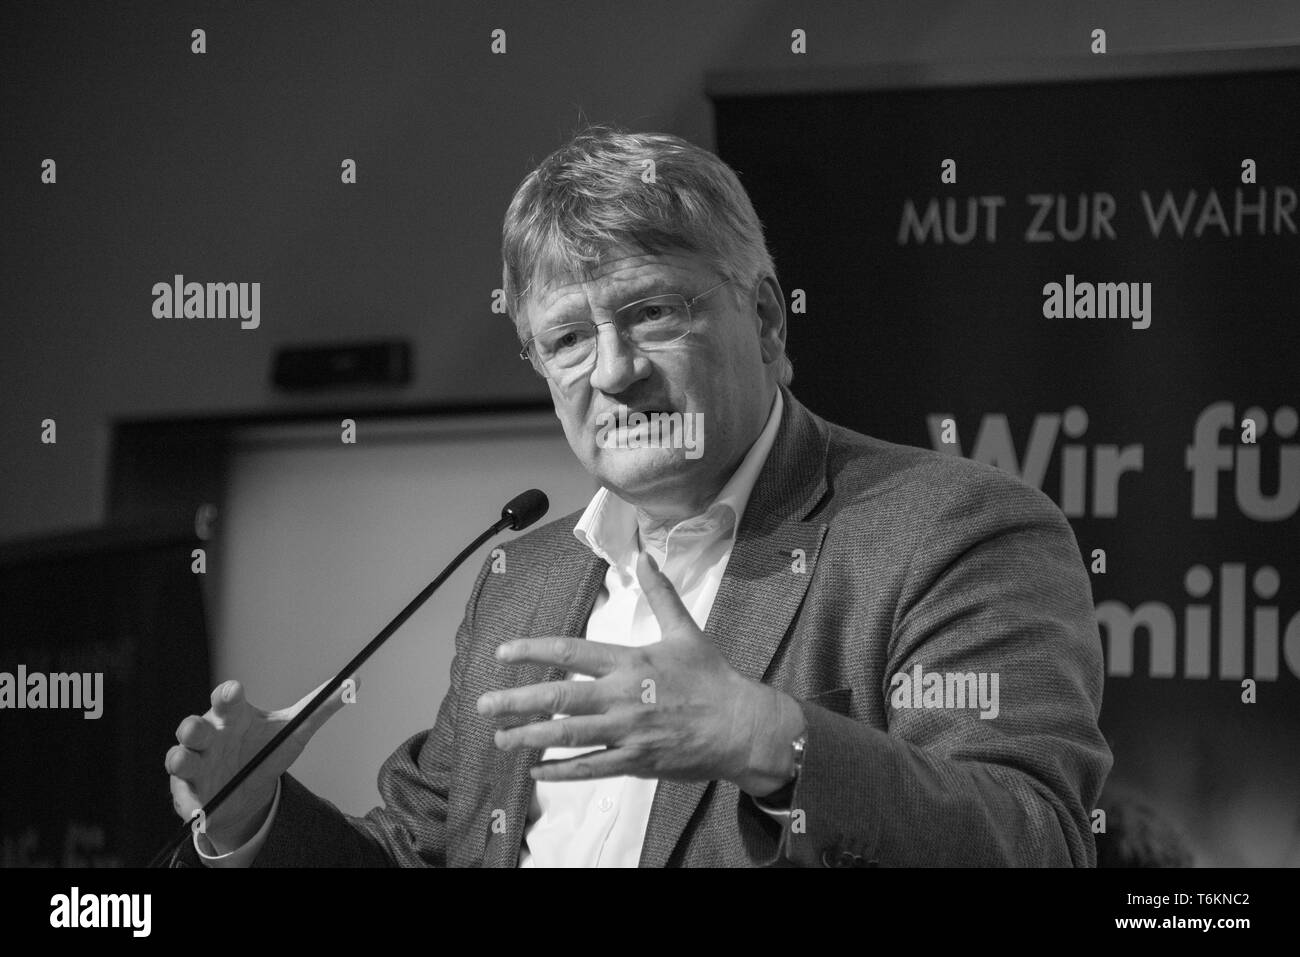 Jörg Hubert Meuthen, Président du Parti de l'AFD et membre du Parlement européen, parle à Magdebourg à un événement de la campagne électorale pour l'elec Banque D'Images